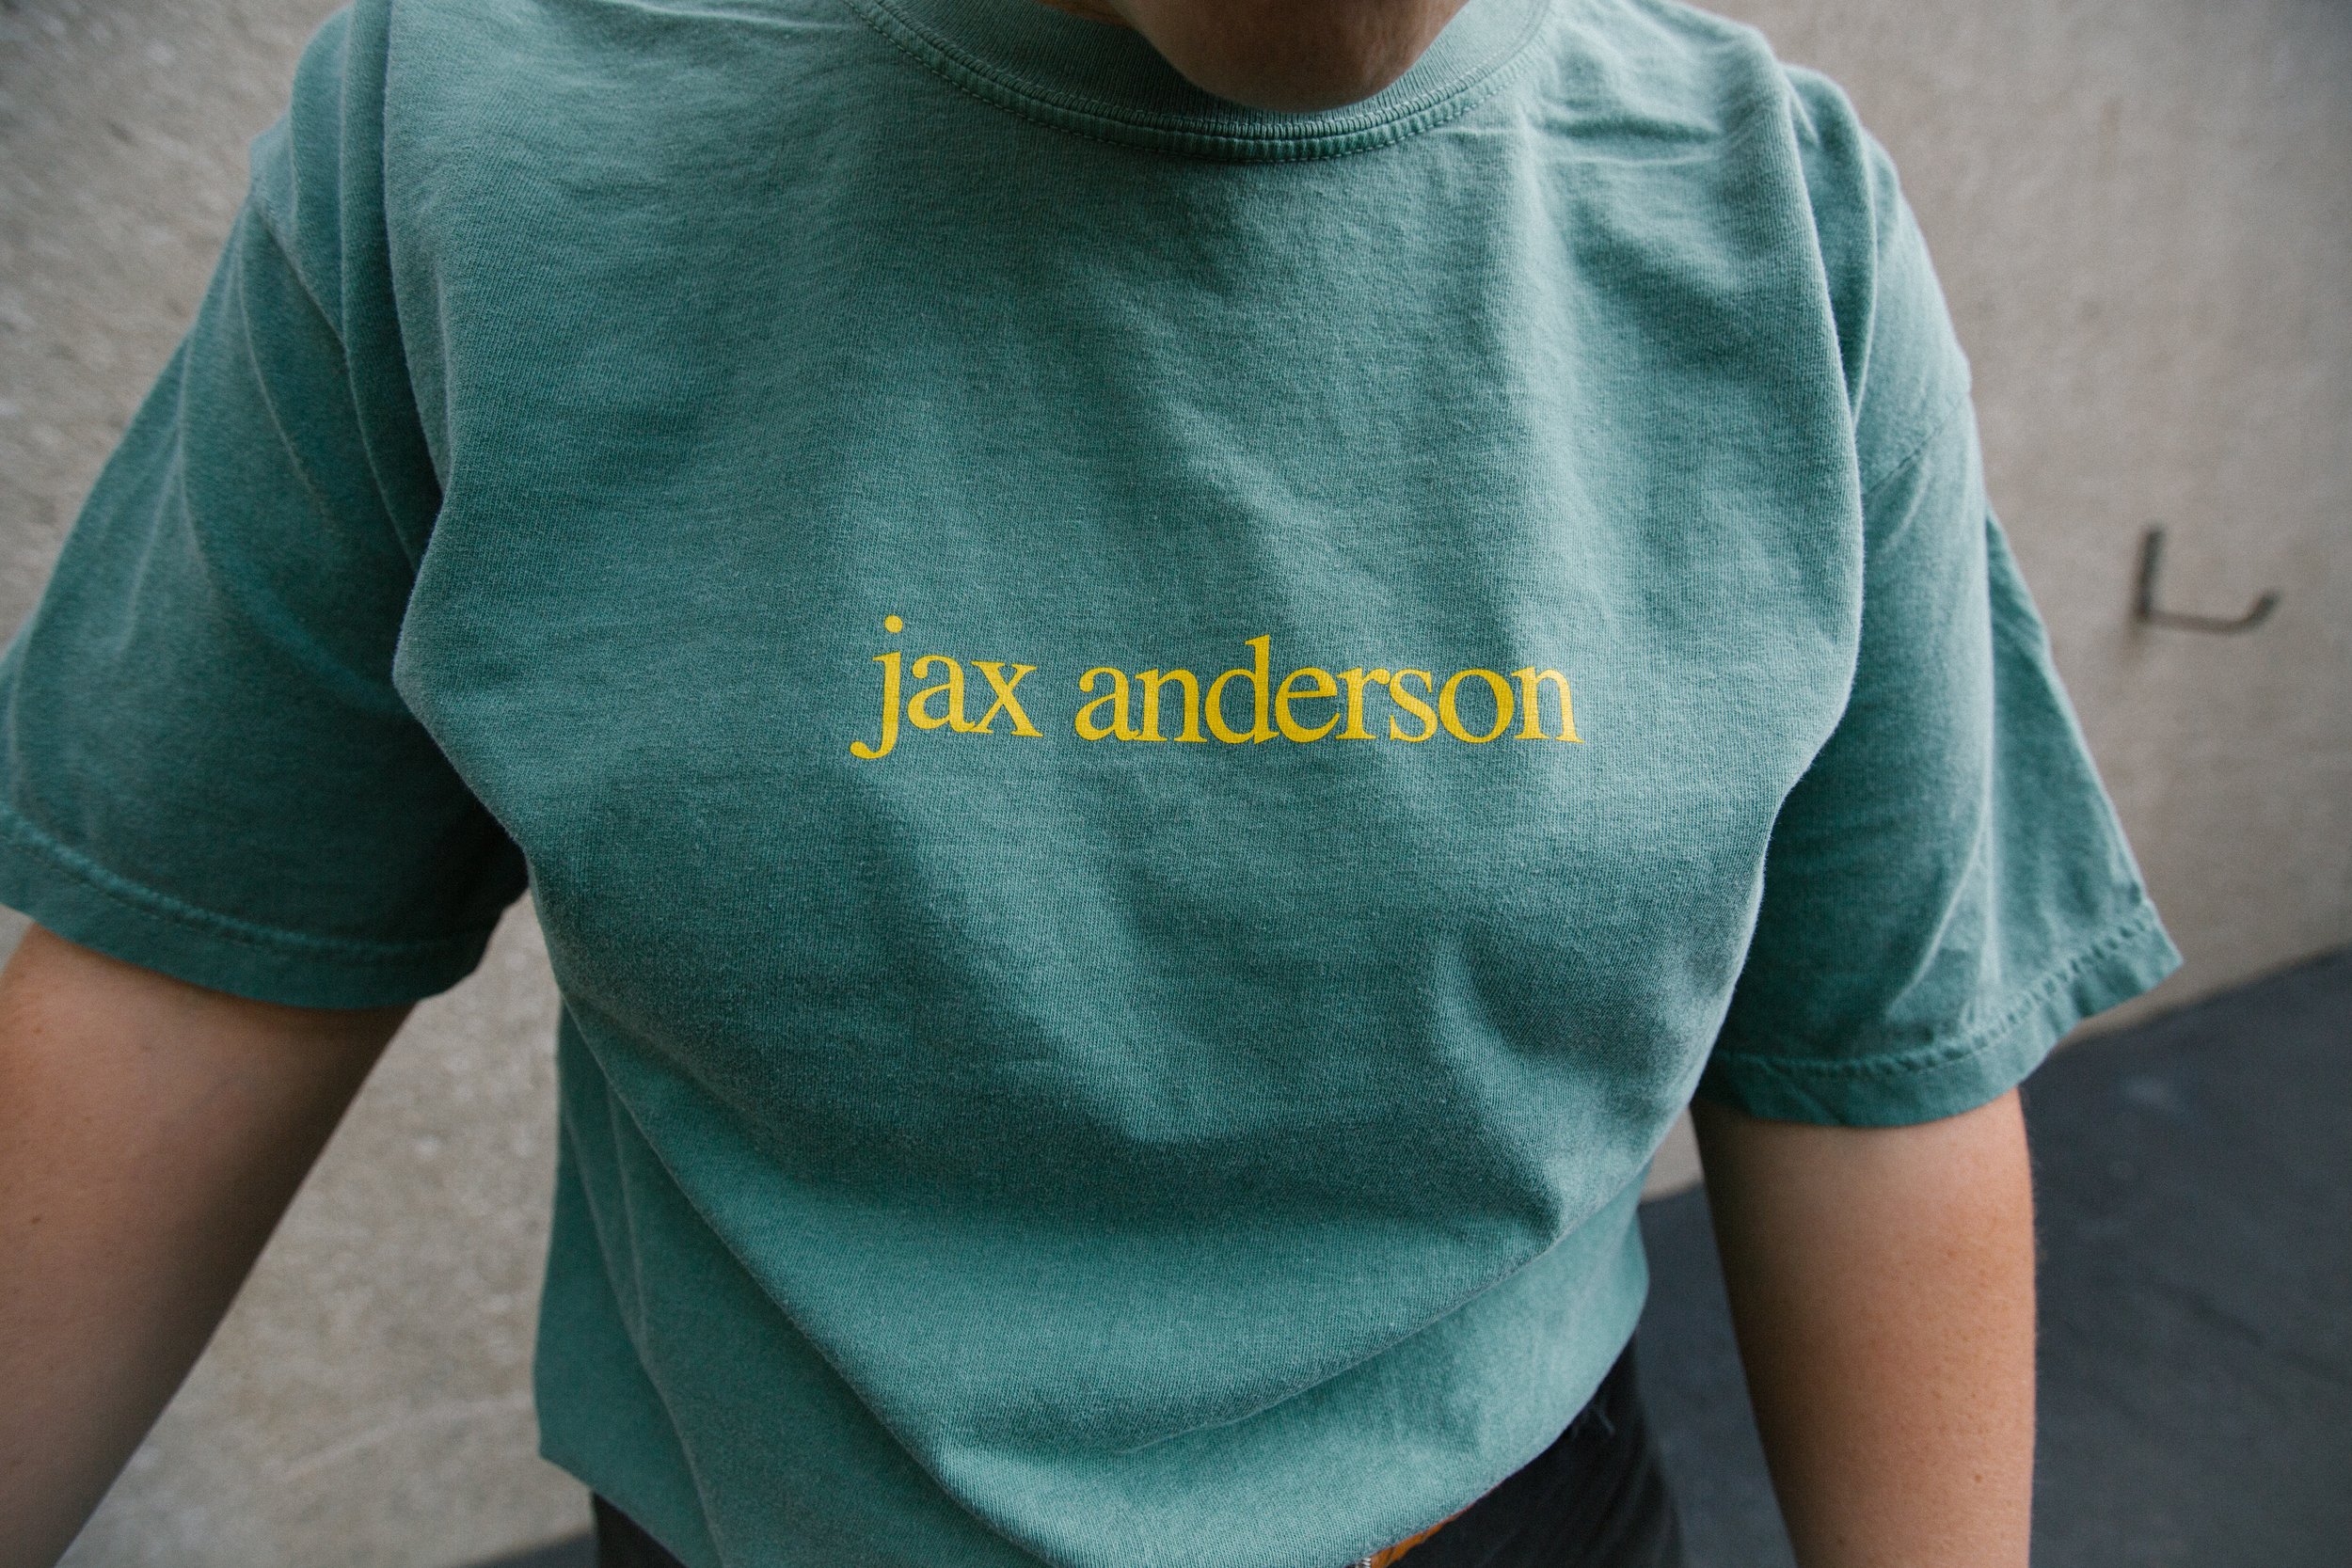   Dandelion merch design by Jax Anderson  